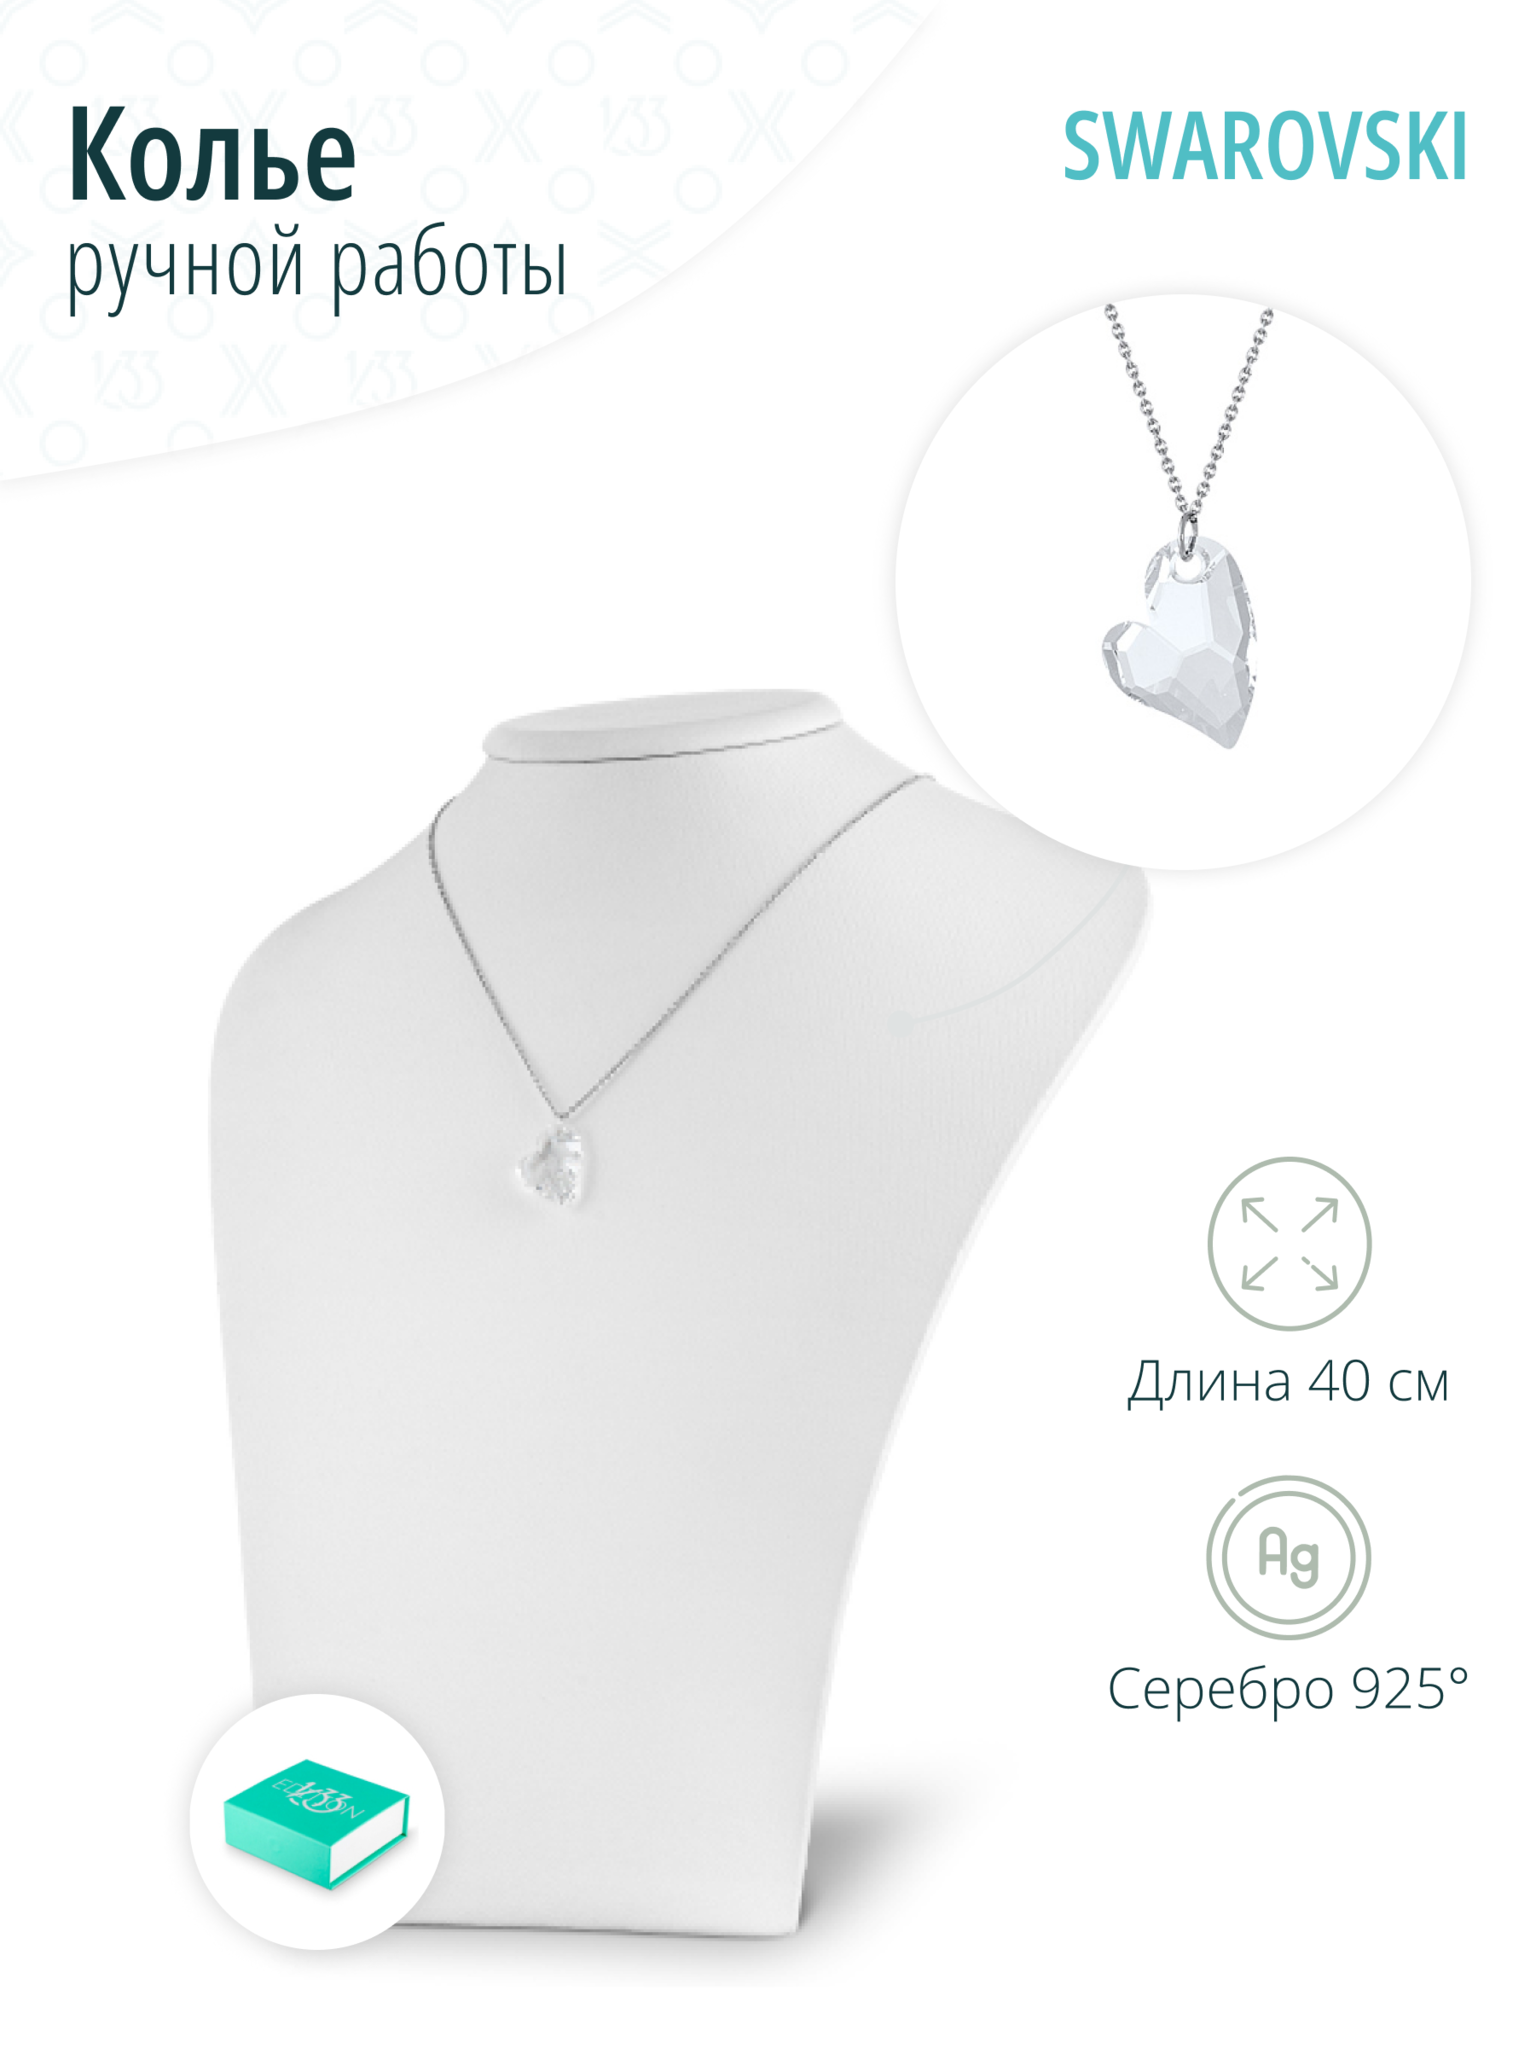 Ювелирная серебряная подвеска с кристаллом Swarovski Сердце - артикул55666087 - купить в интернет-магазине ювелирной бижутерии Lattrice